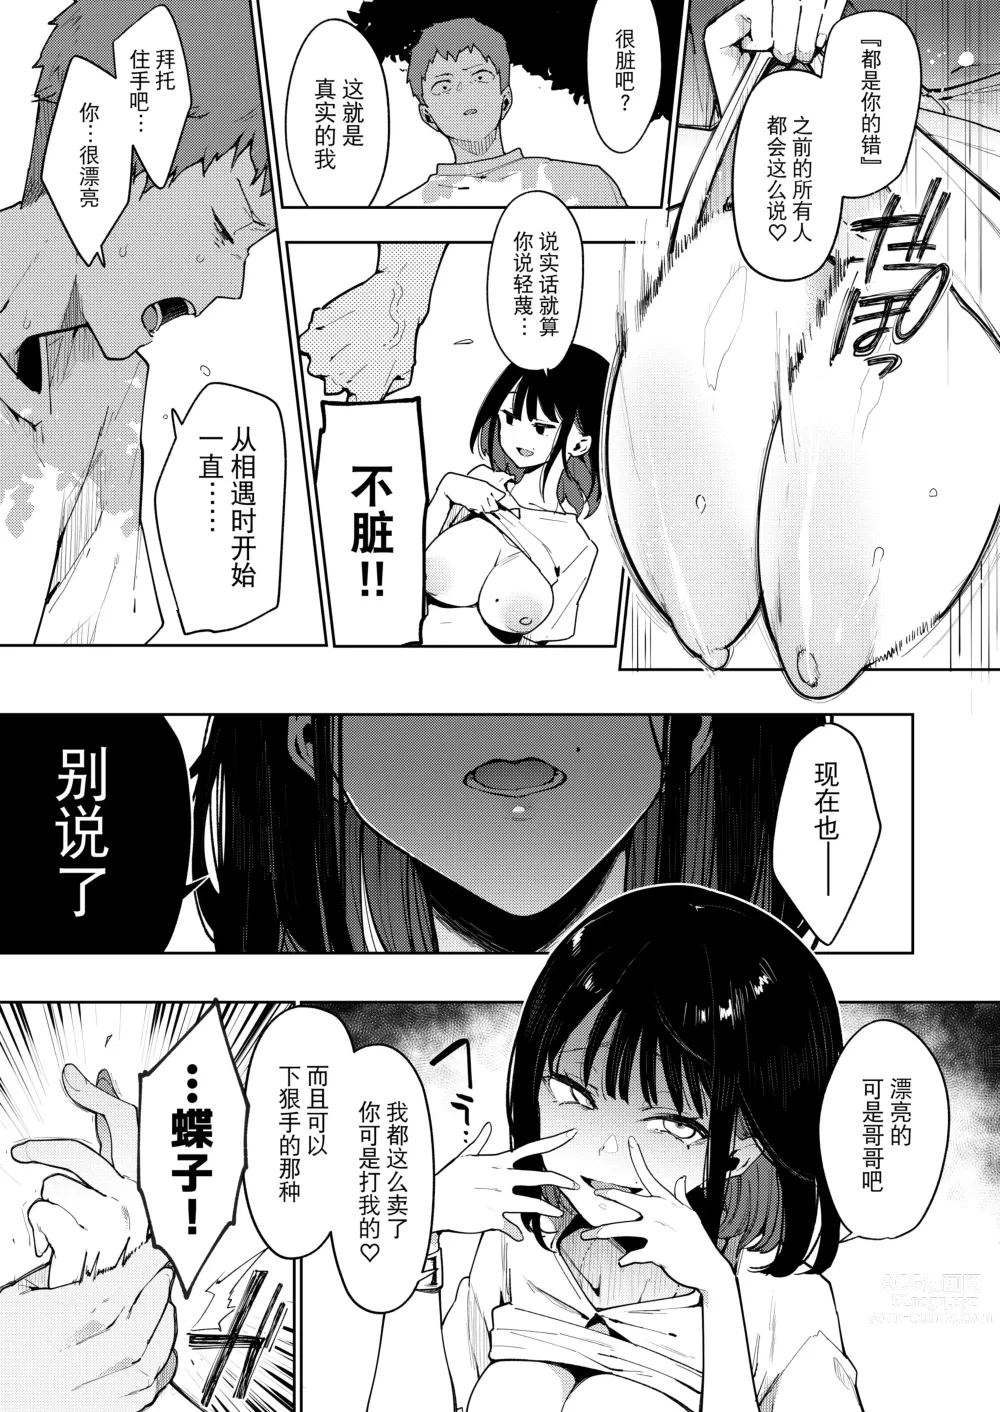 Page 155 of doujinshi Chouko I-V